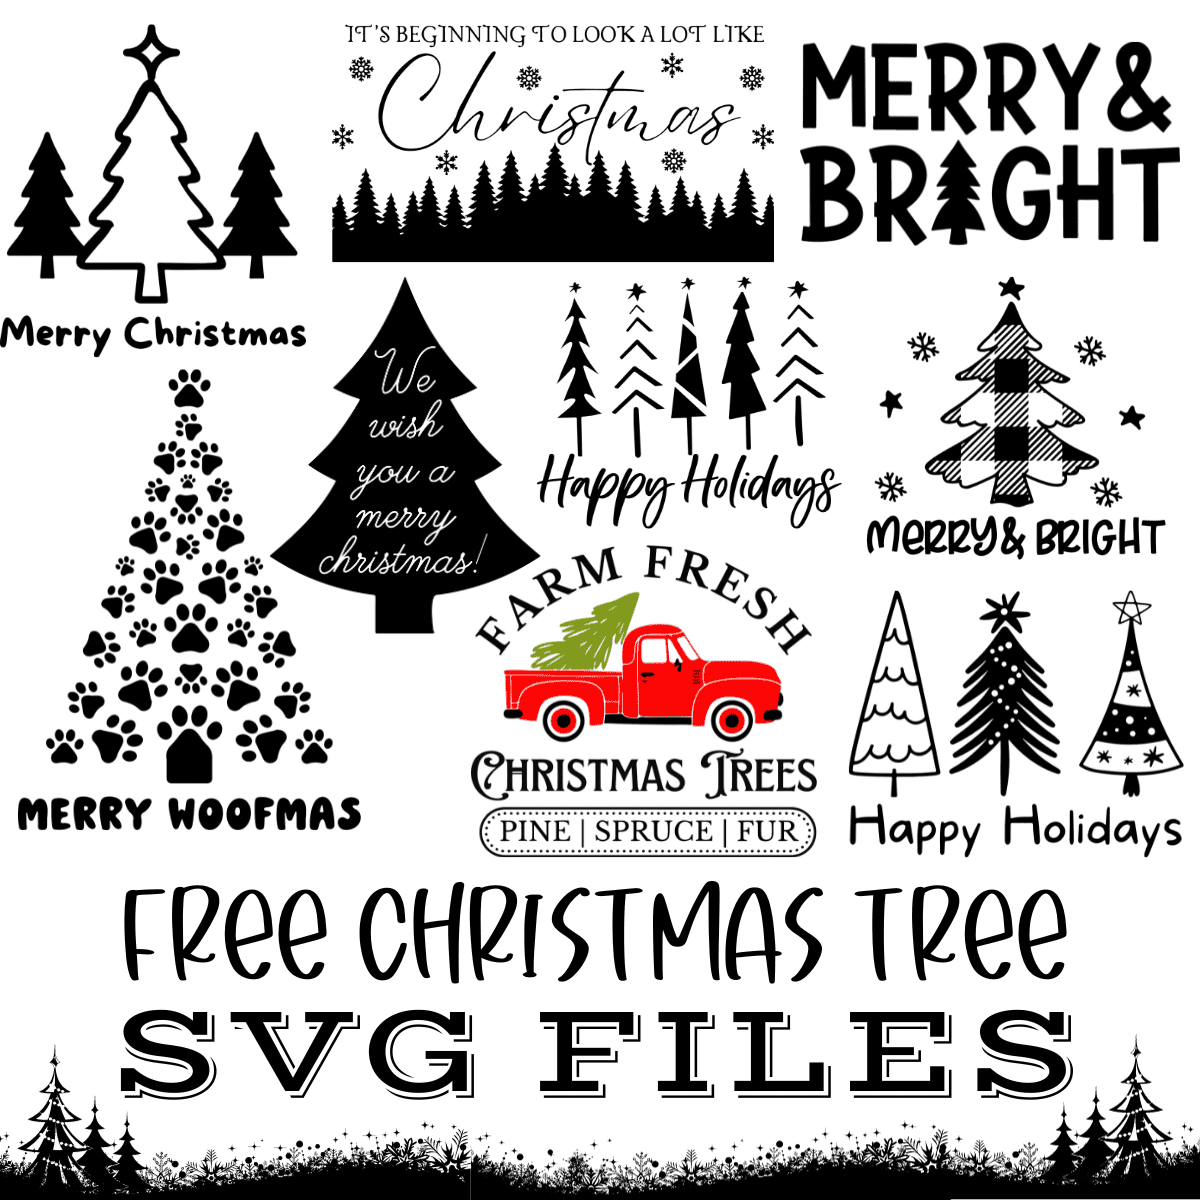 Free Christmas Tree SVG Files